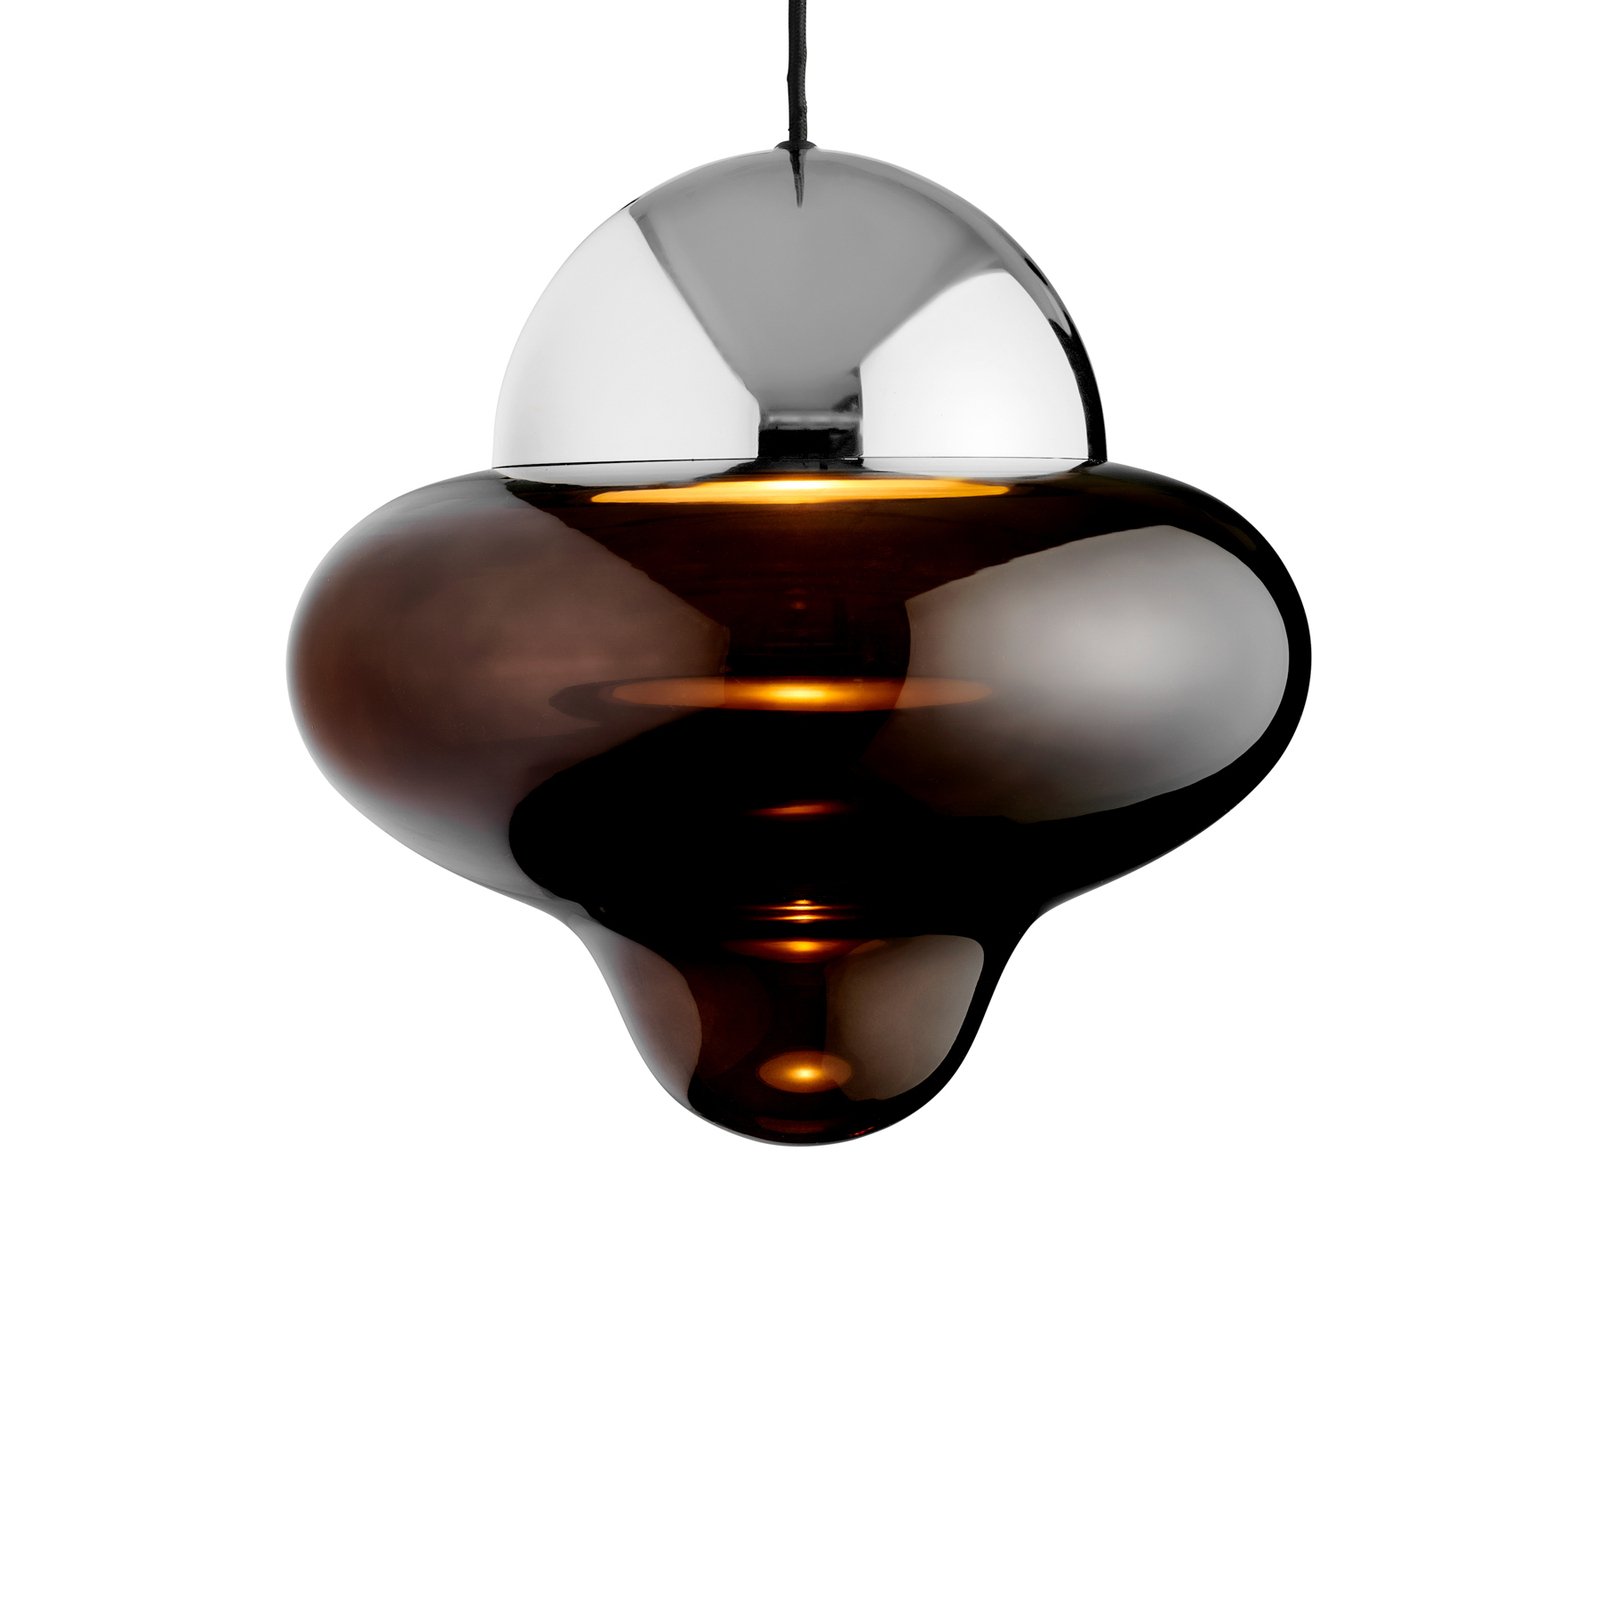 LED-Hängeleuchte Nutty XL, braun / chromfarben, Ø 30 cm